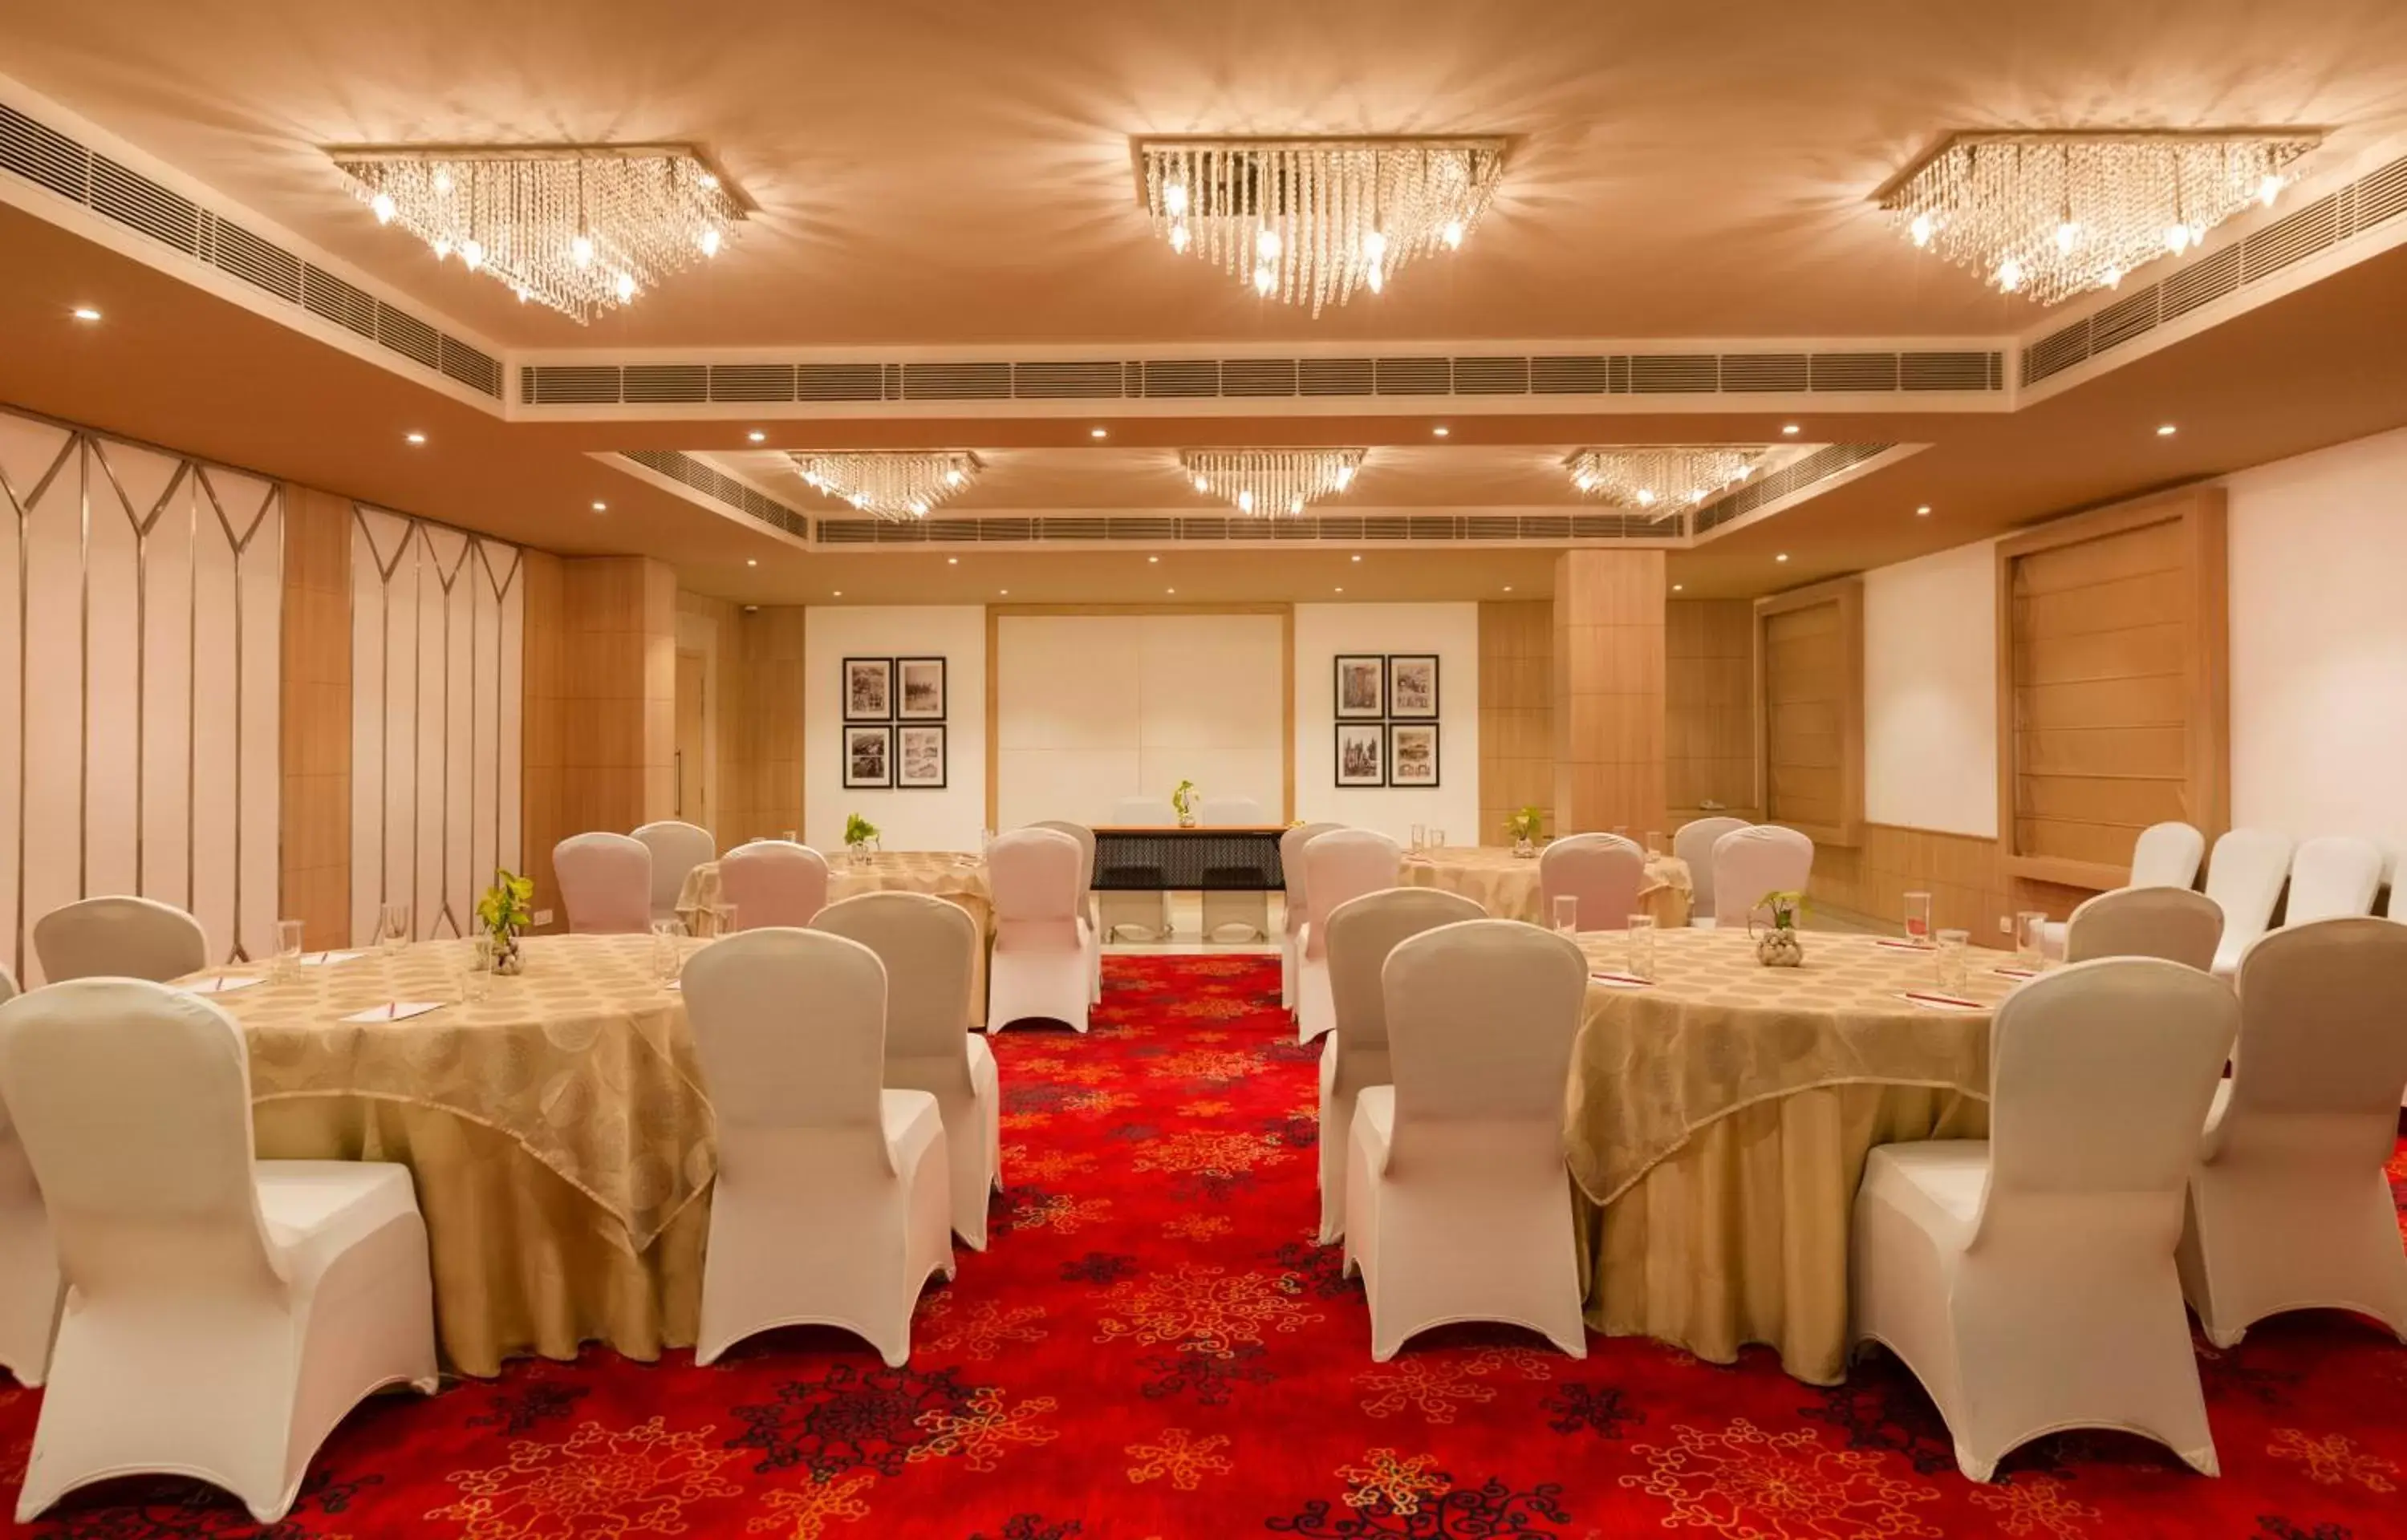 Banquet/Function facilities, Banquet Facilities in Red Fox Hotel Dehradun